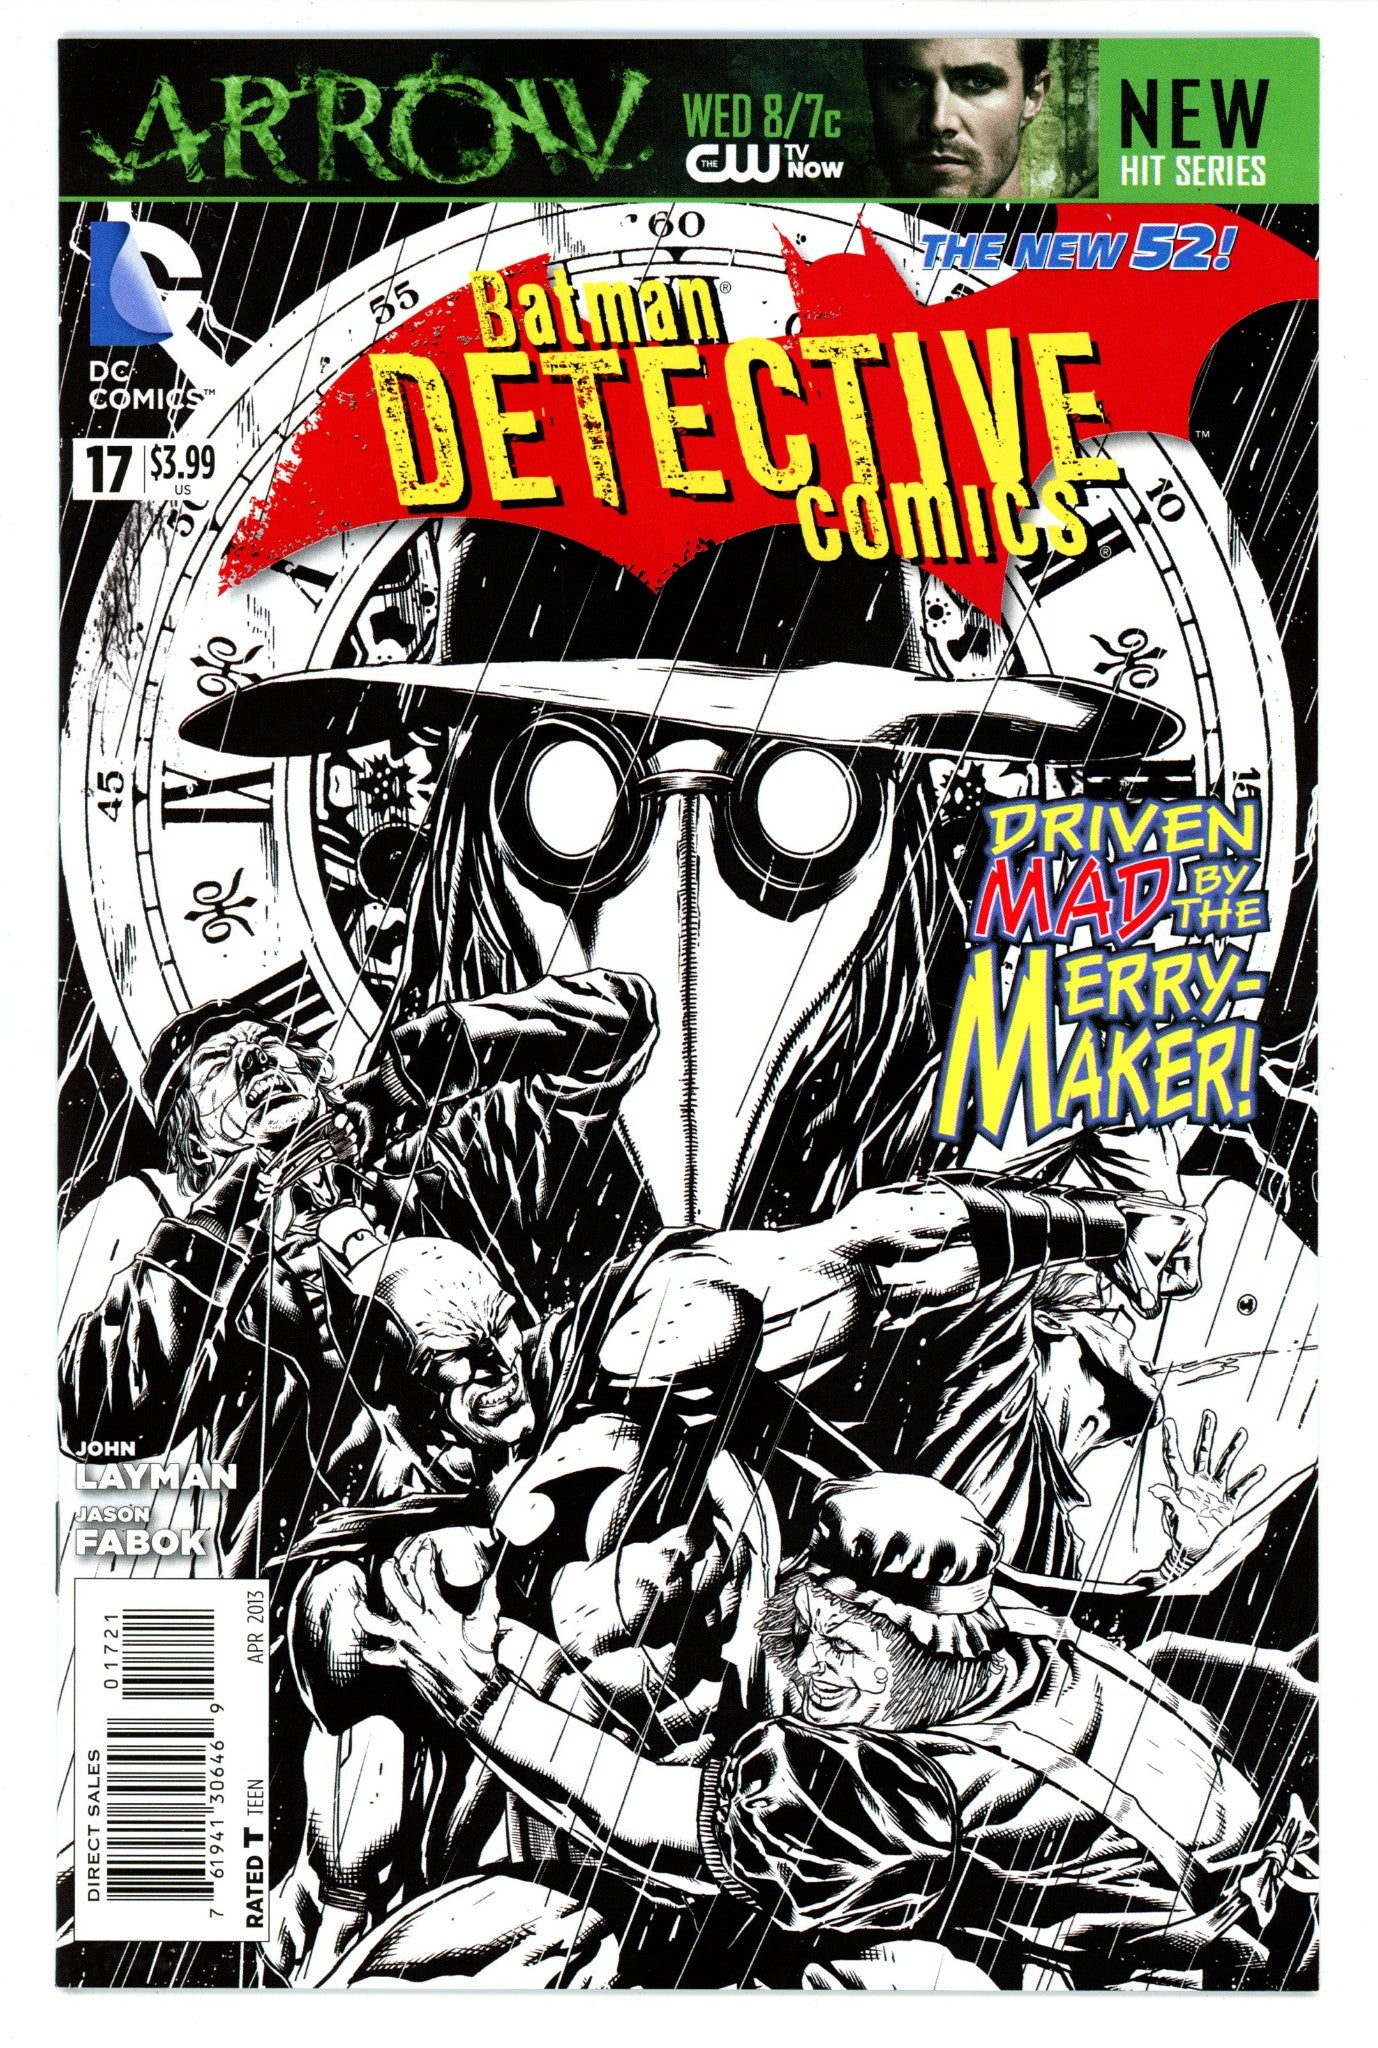 Detective Comics Vol 2 17 High Grade (2013) Fabok B&W Incentive Variant 